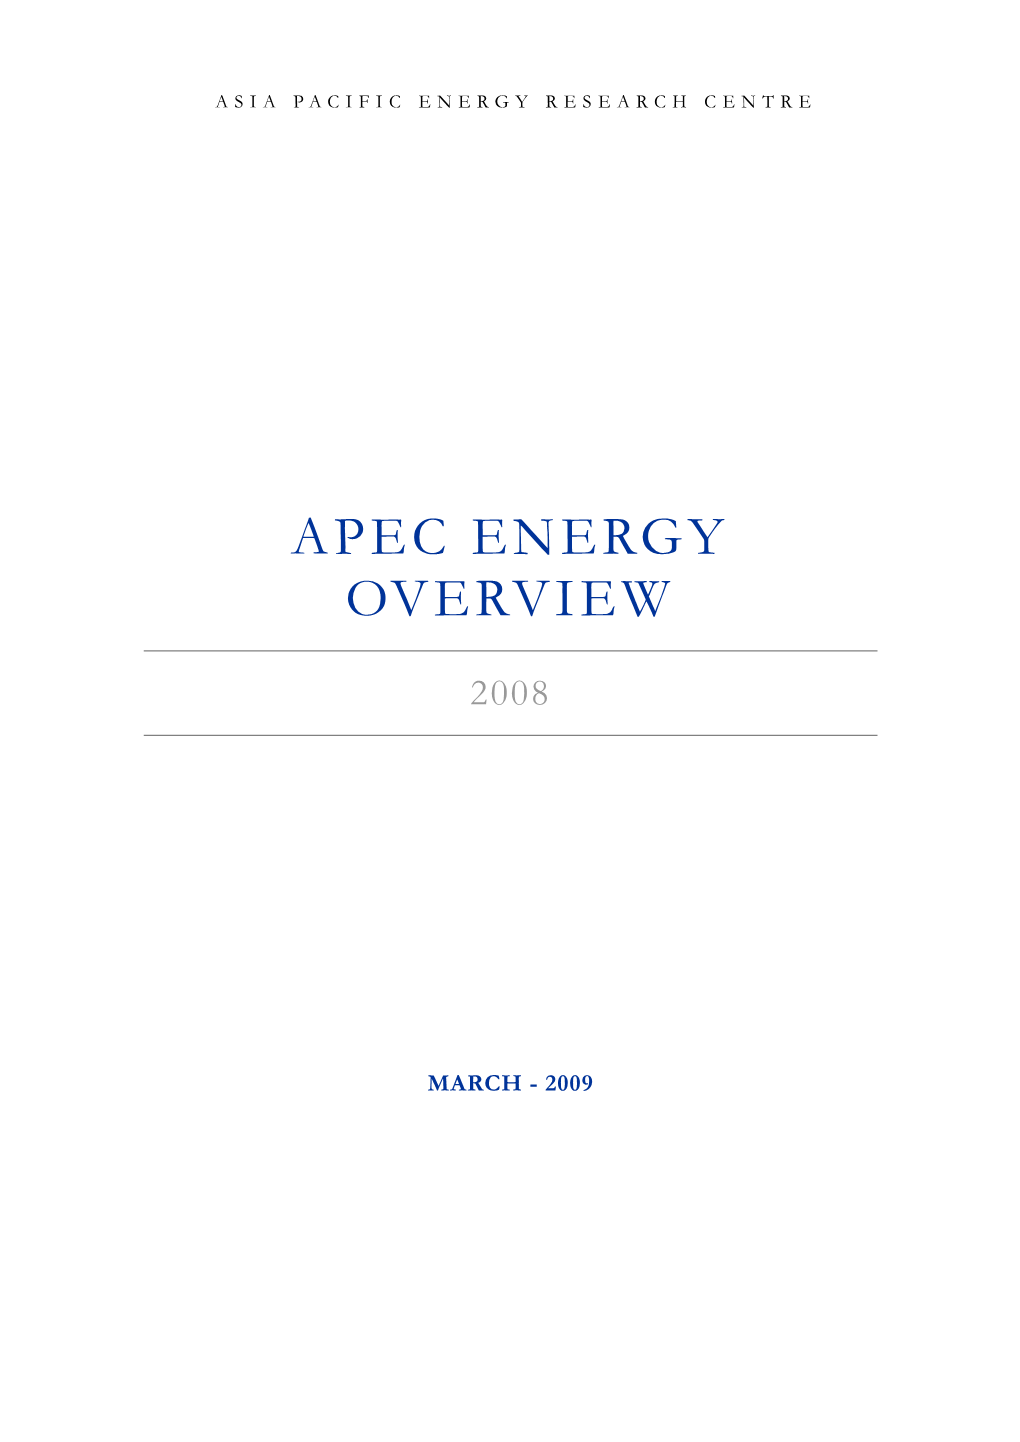 APEC Energy Overview 2008